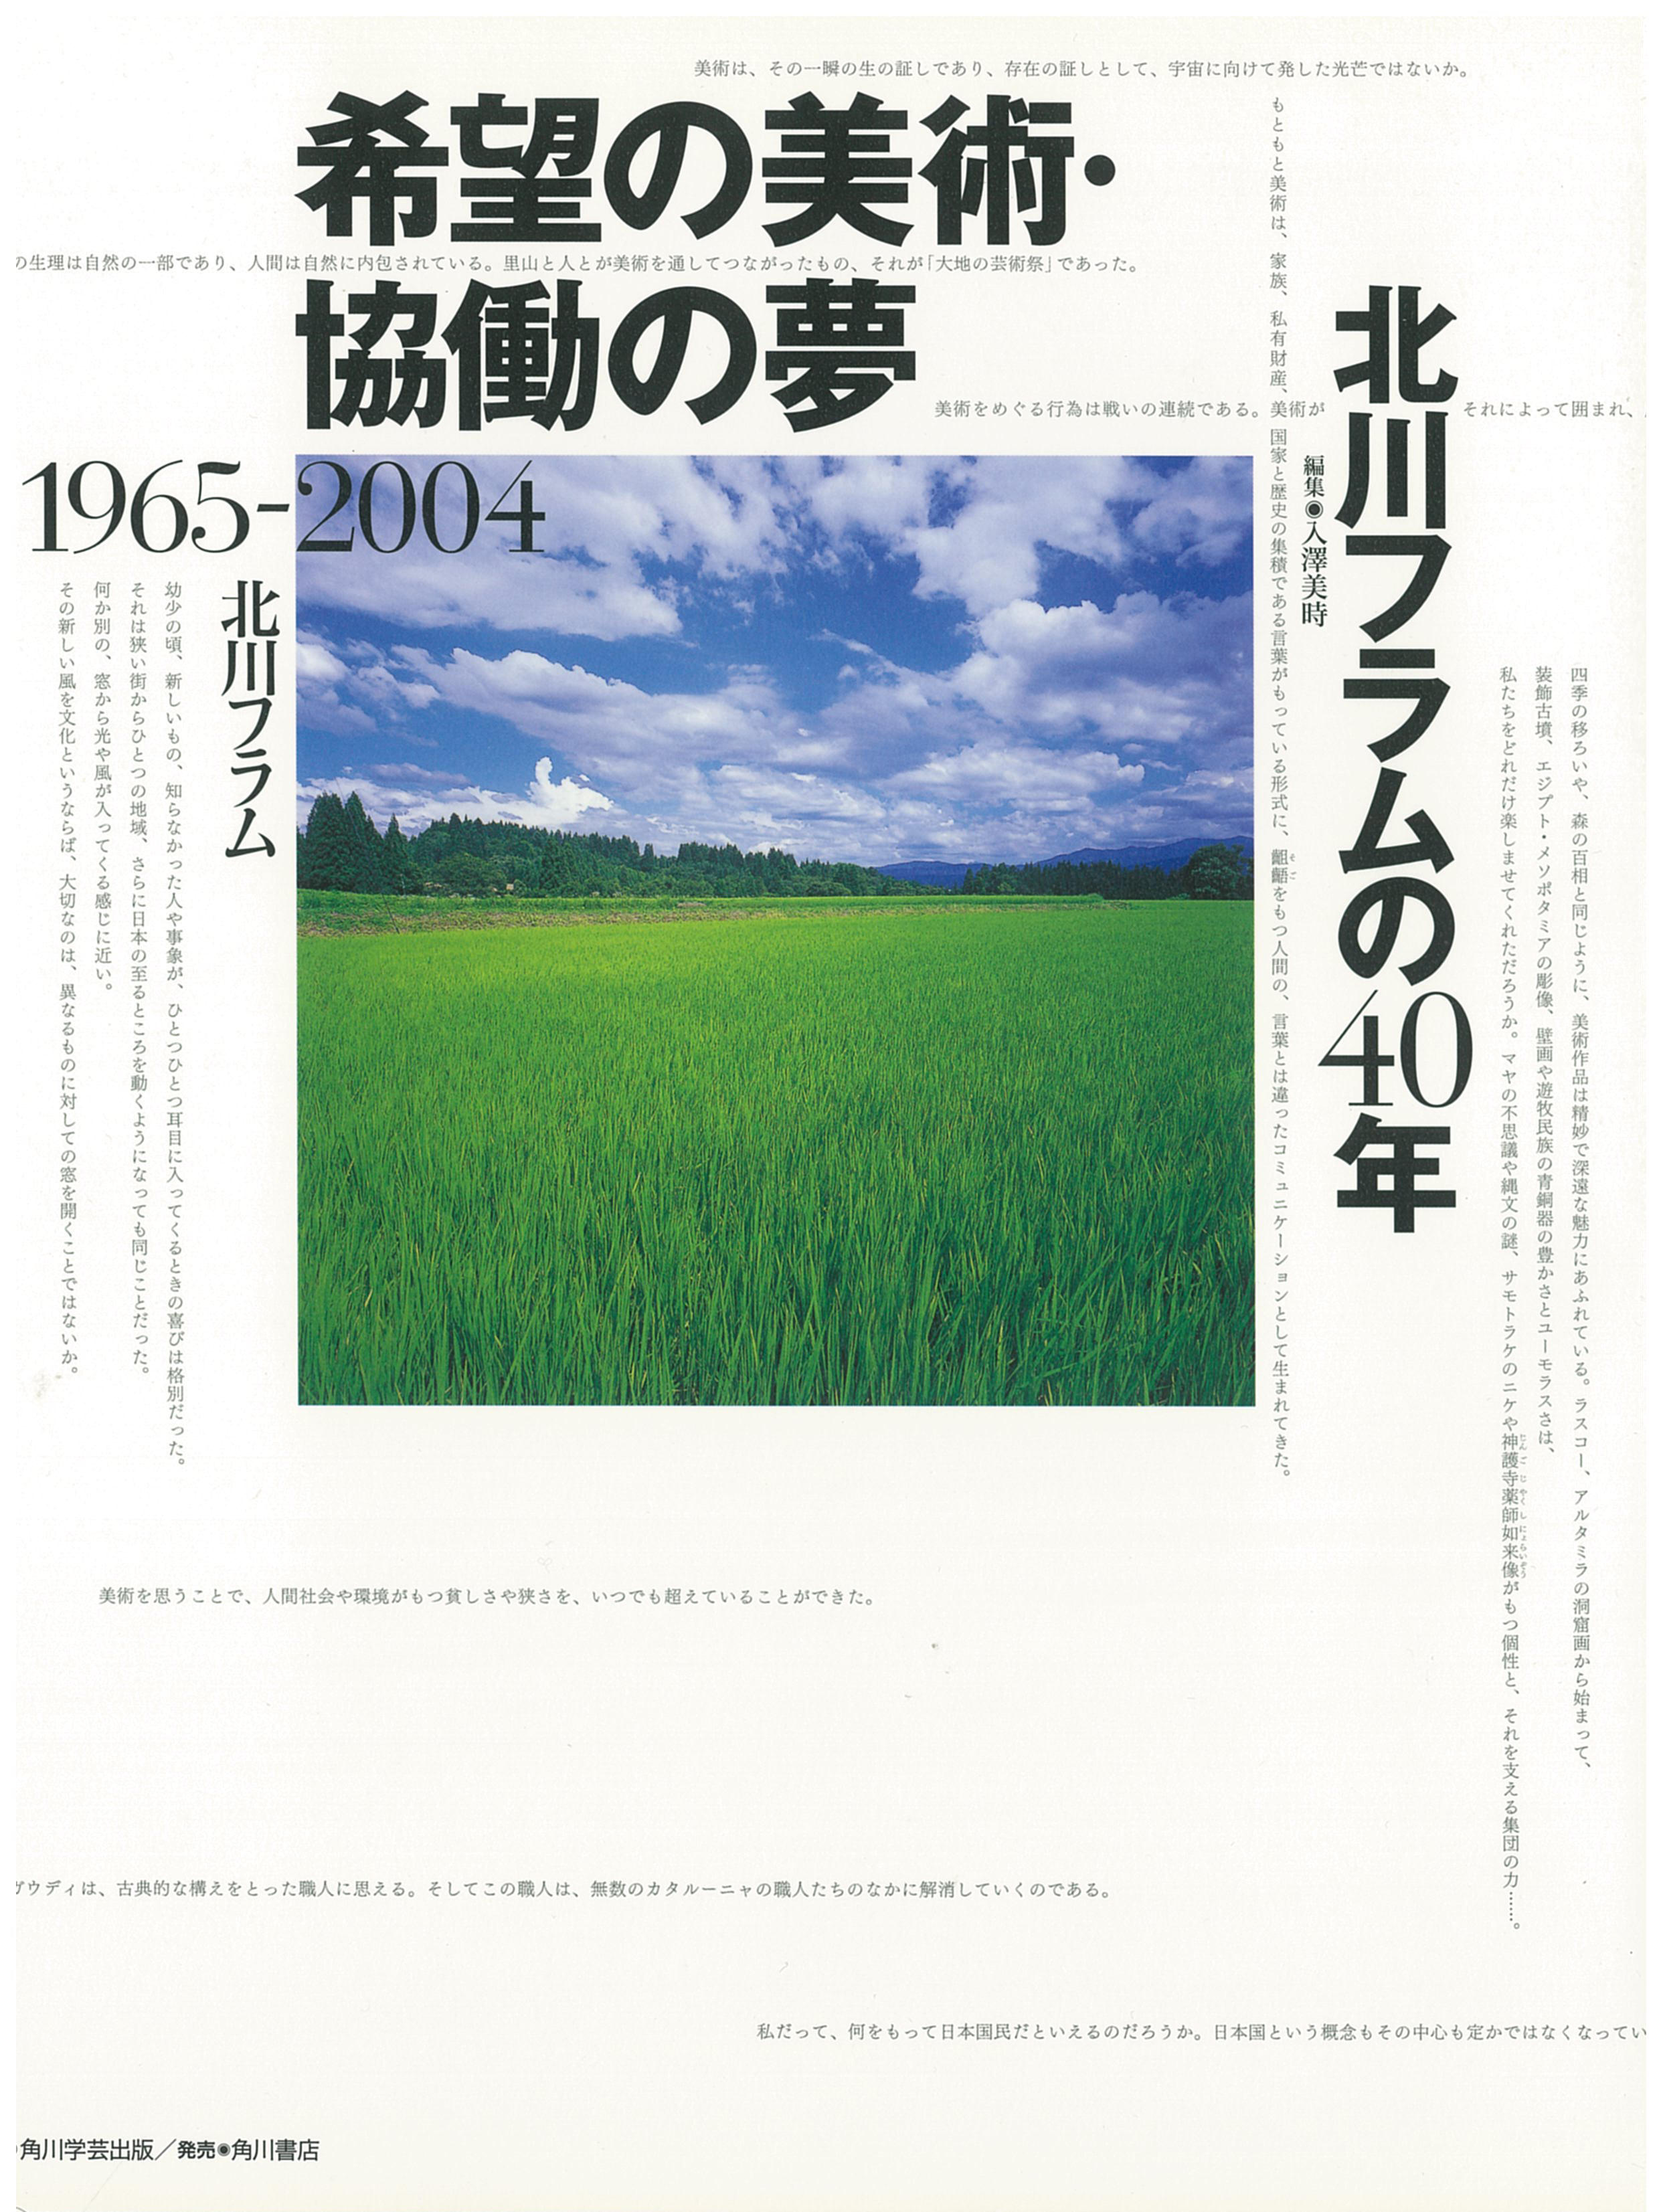 40 years of Fram Kitagawa 1965 - 2004